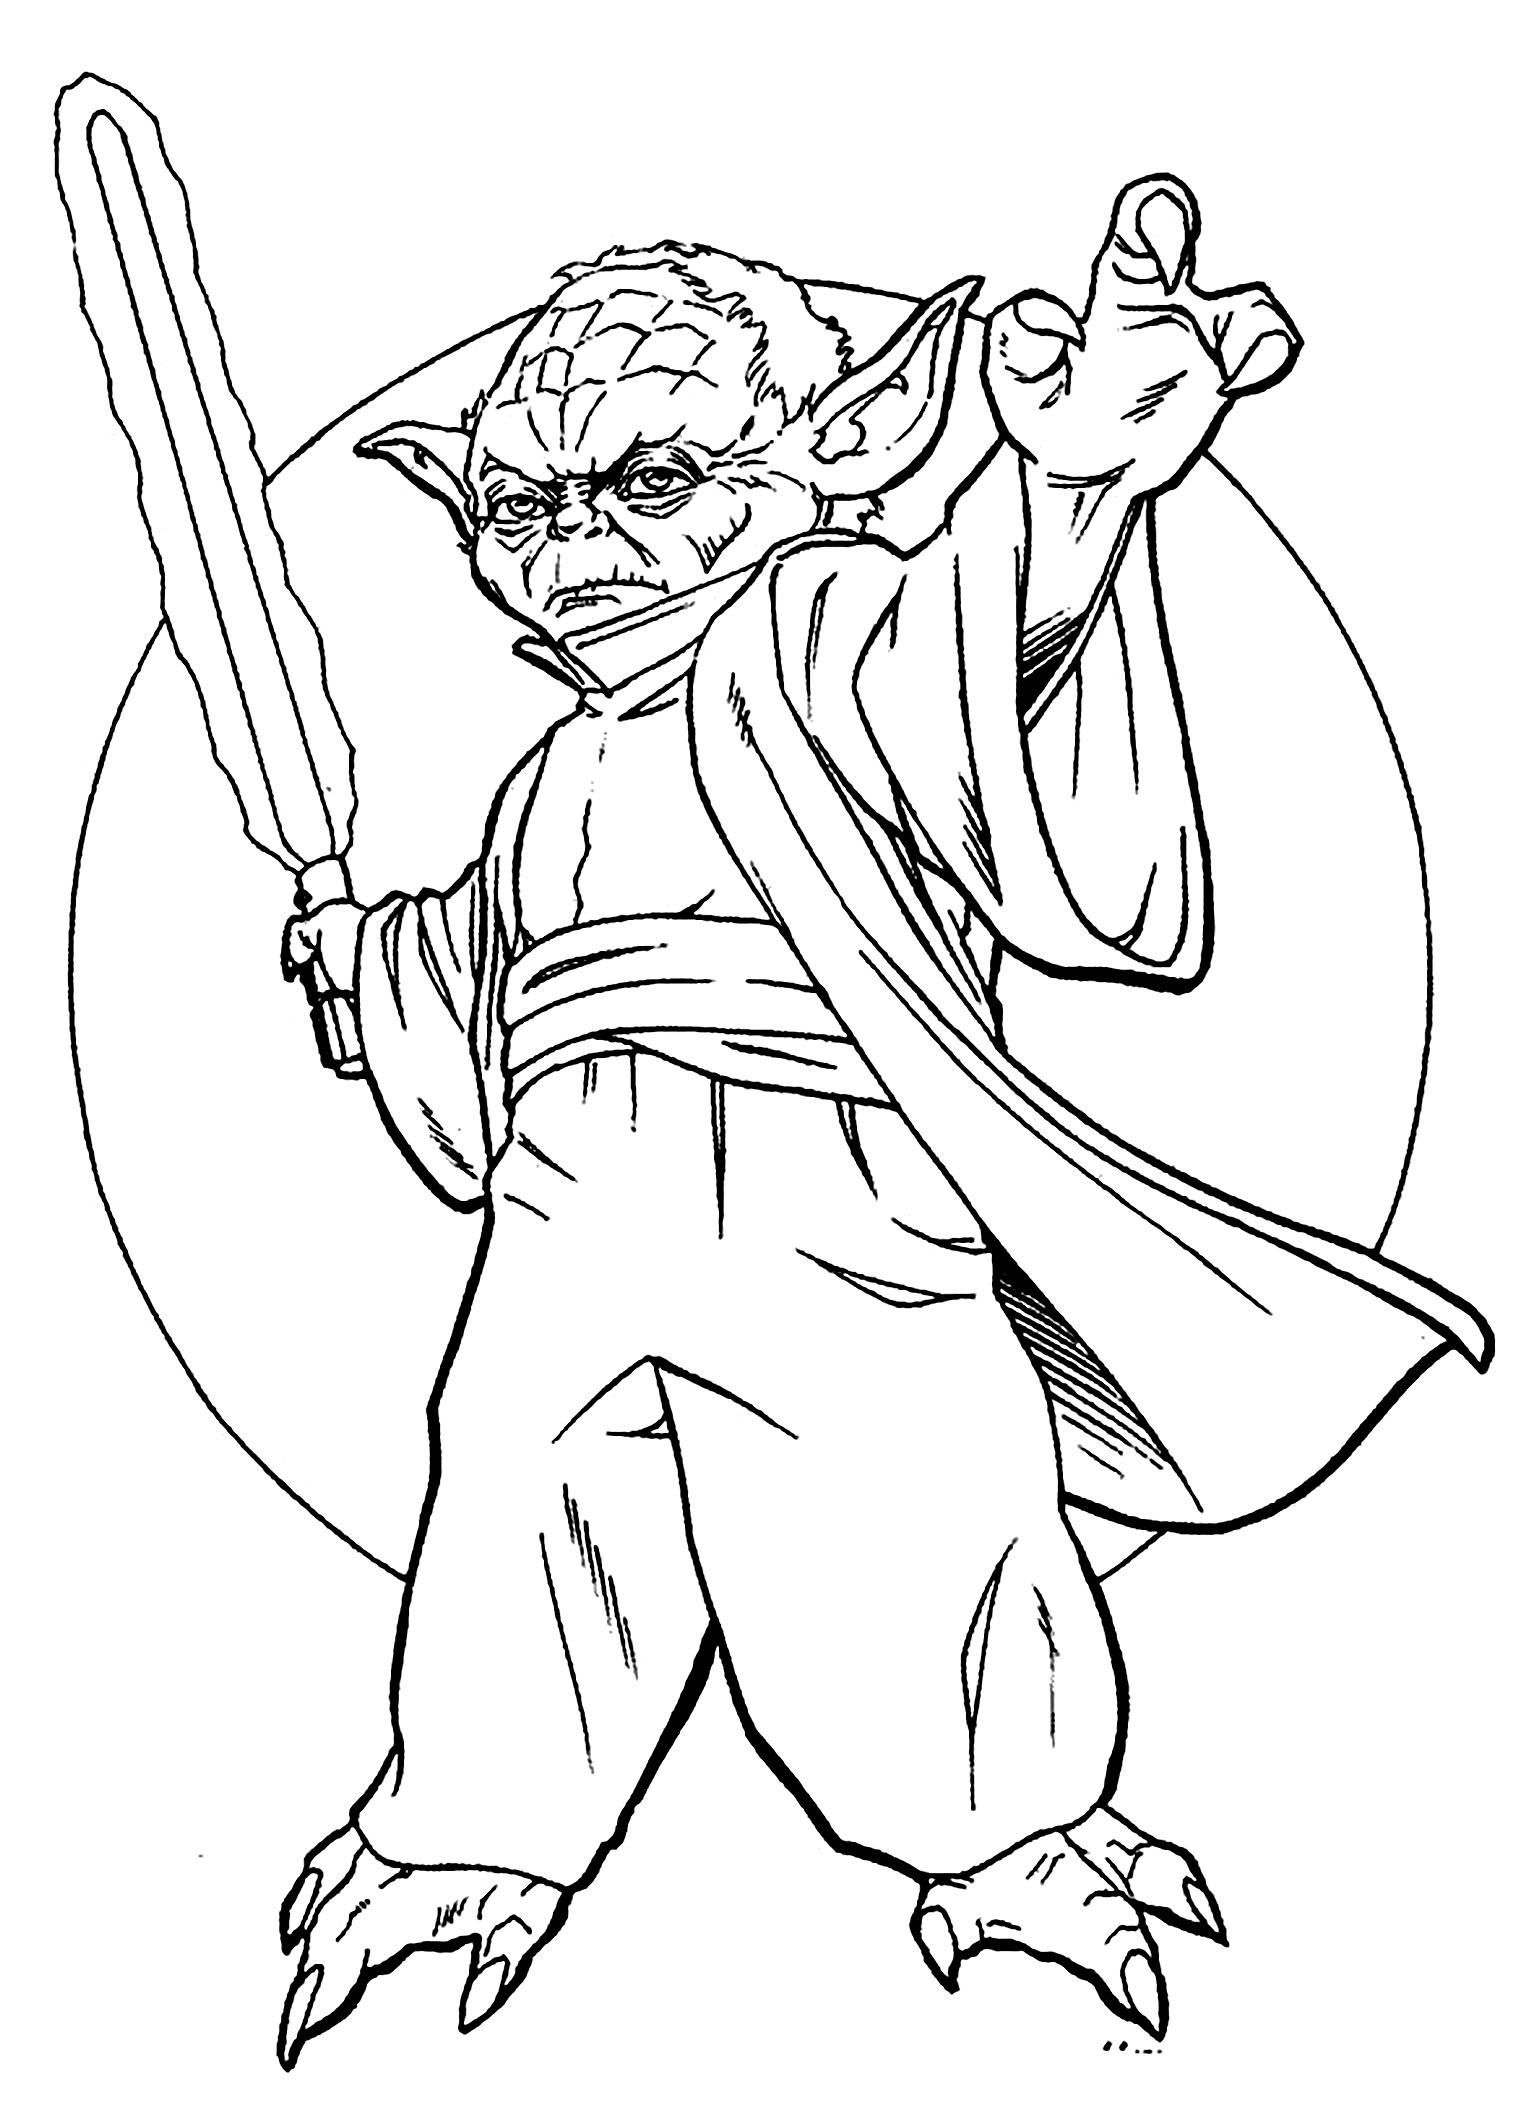 Le maître Jedi Yoda et son sabre laser